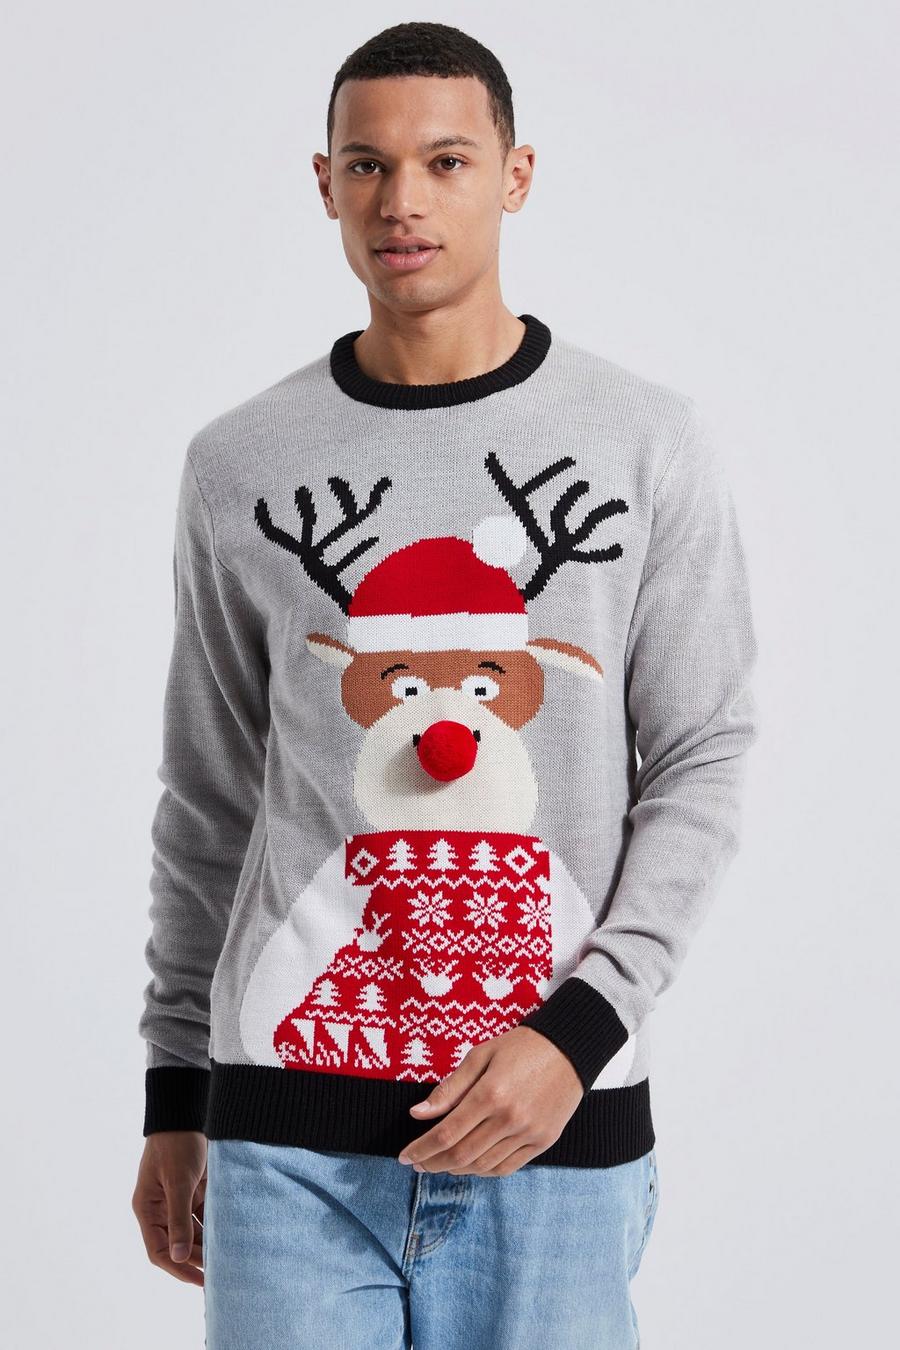 Maglione natalizio Tall con renne e cappello da Babbo Natale, Grey marl grigio